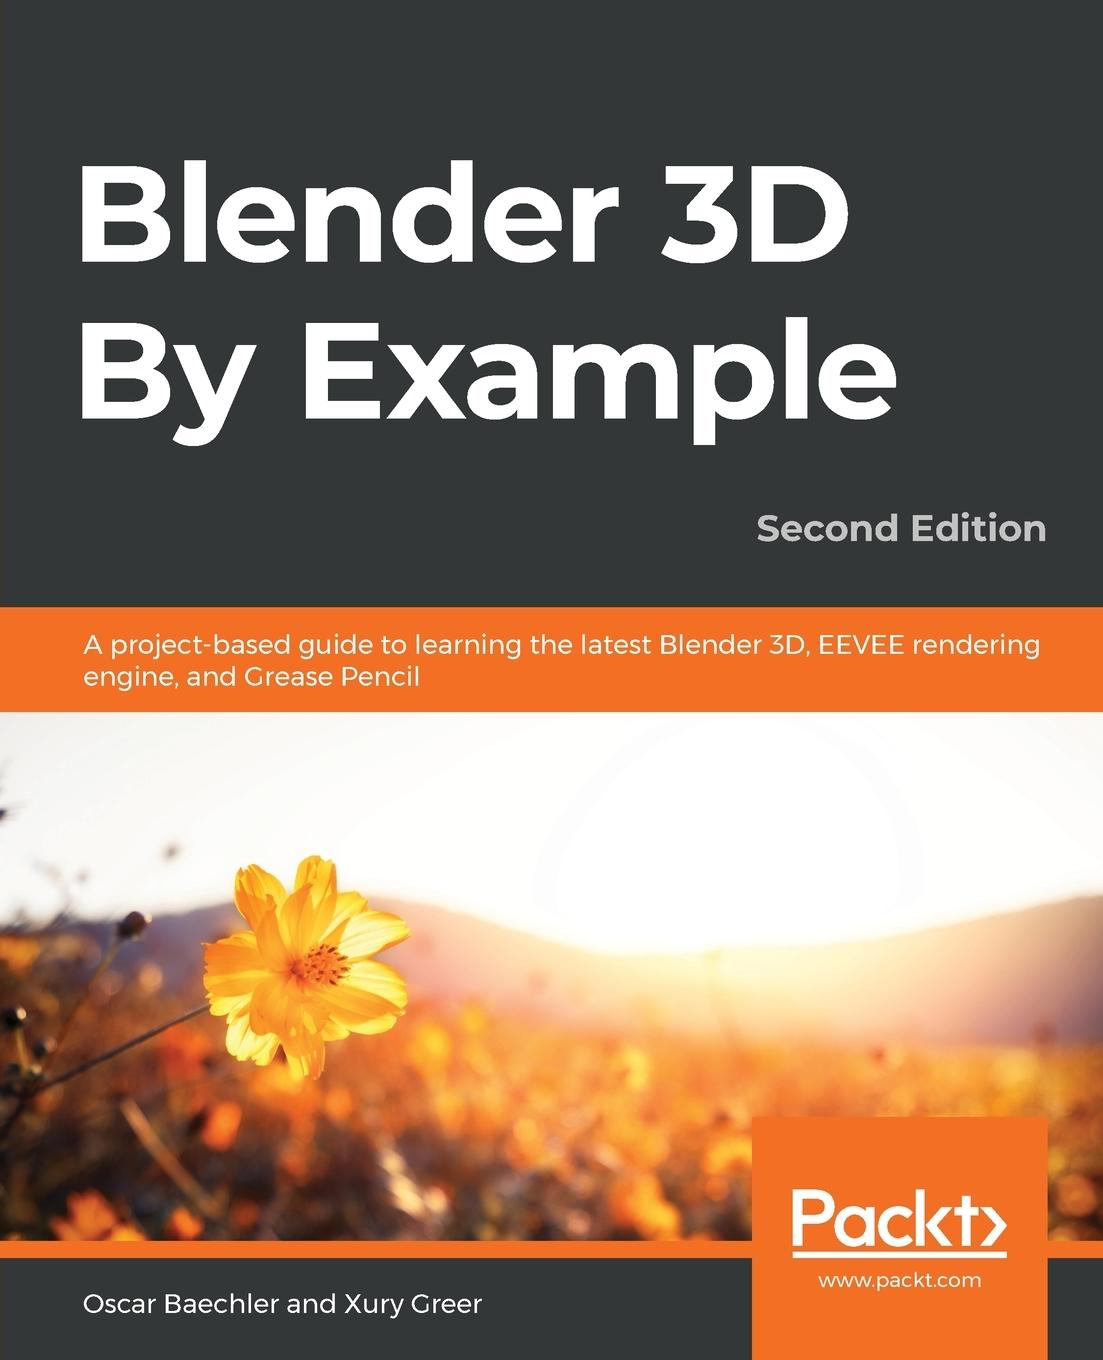 Carte Blender 3D By Example Xury Greer